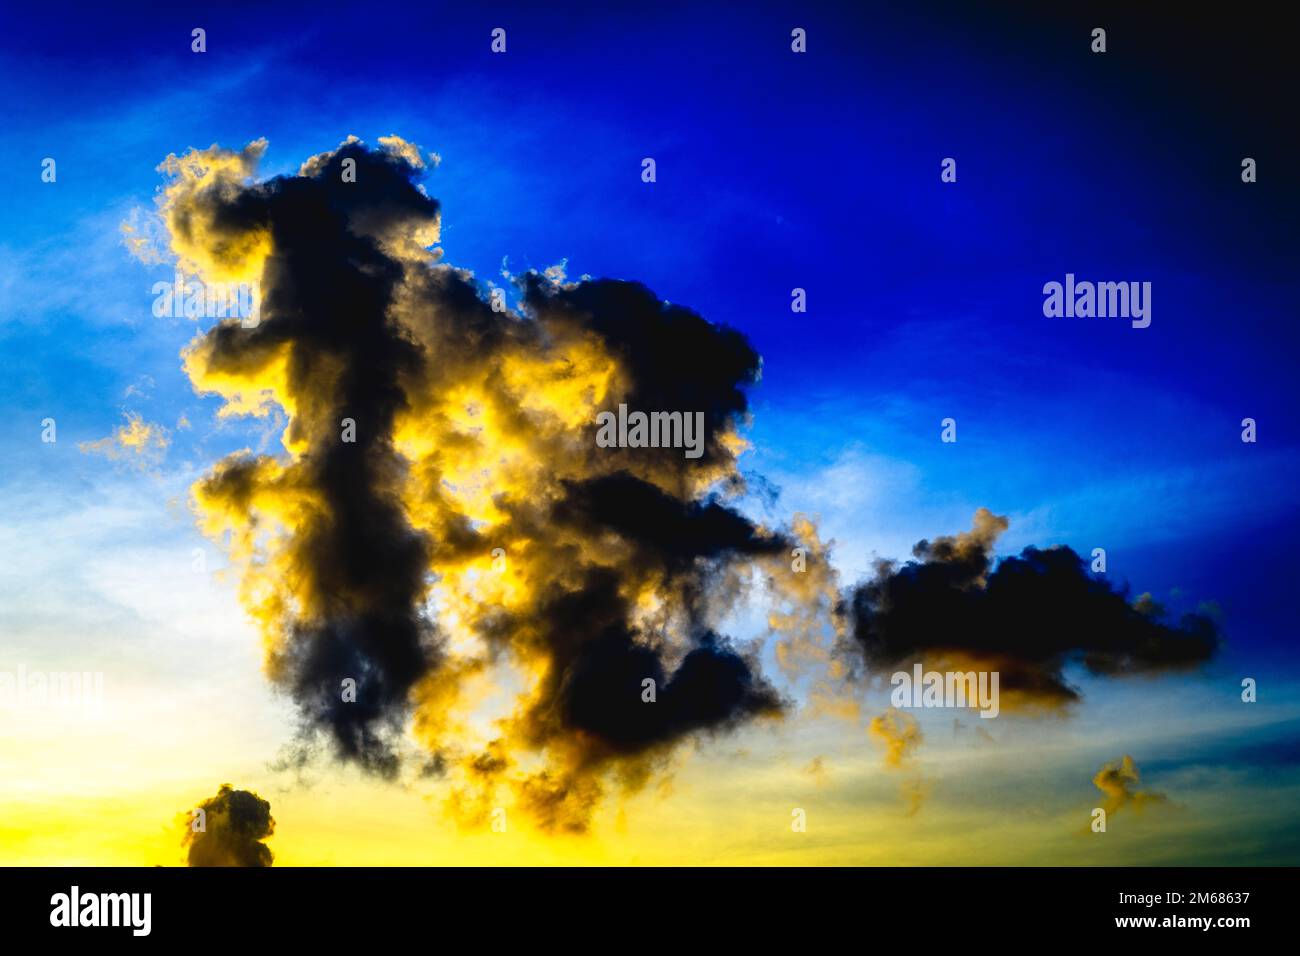 Arte astratta delle nuvole nel cielo con blu forte e giallo vicino al tramonto. Foto Stock